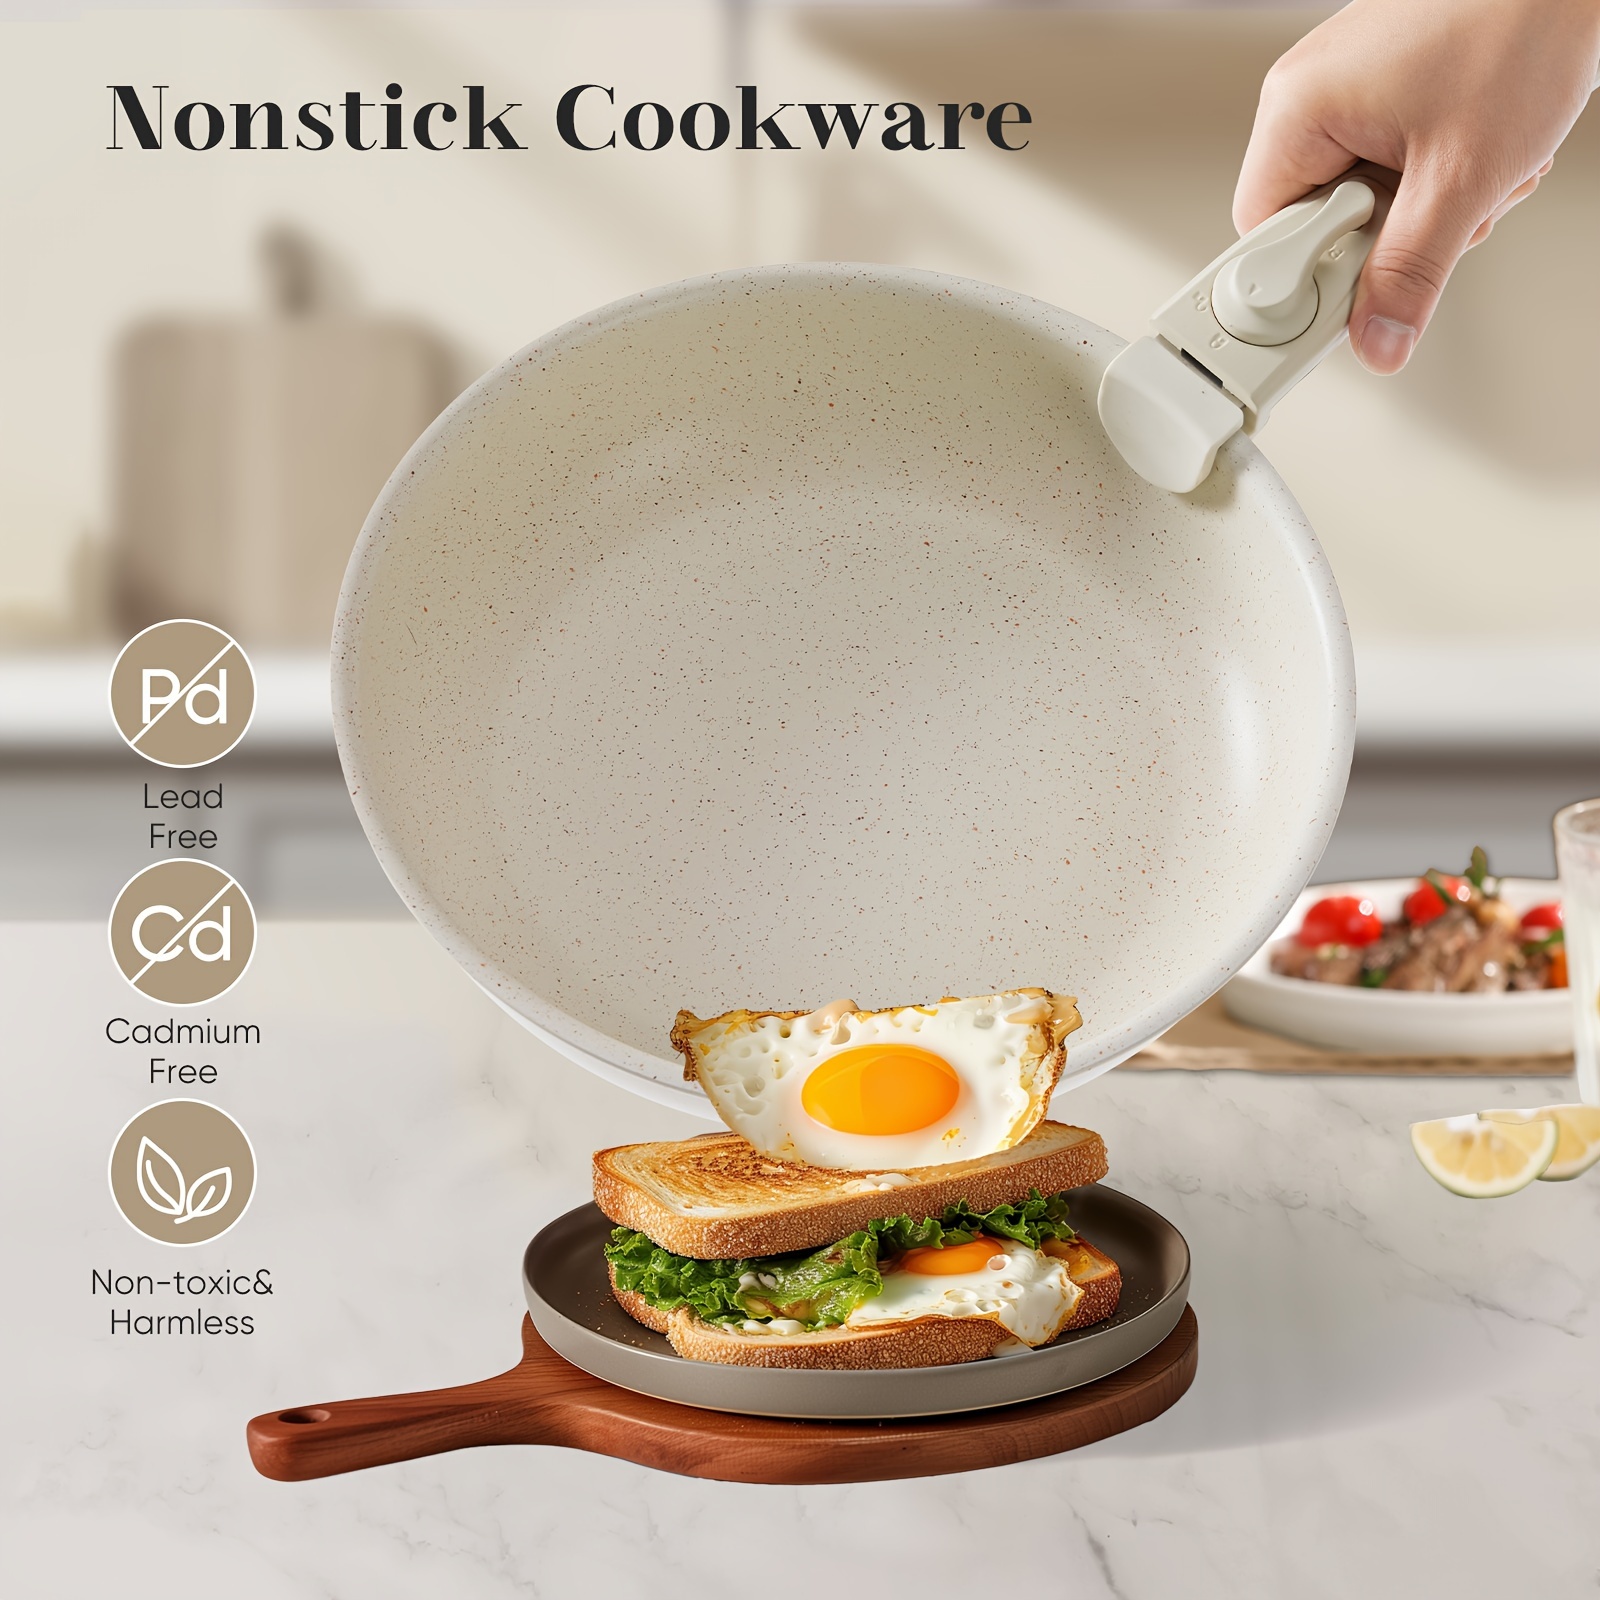 

12pcs Pots And Pans Set Nonstick Cookware Detachable Handle